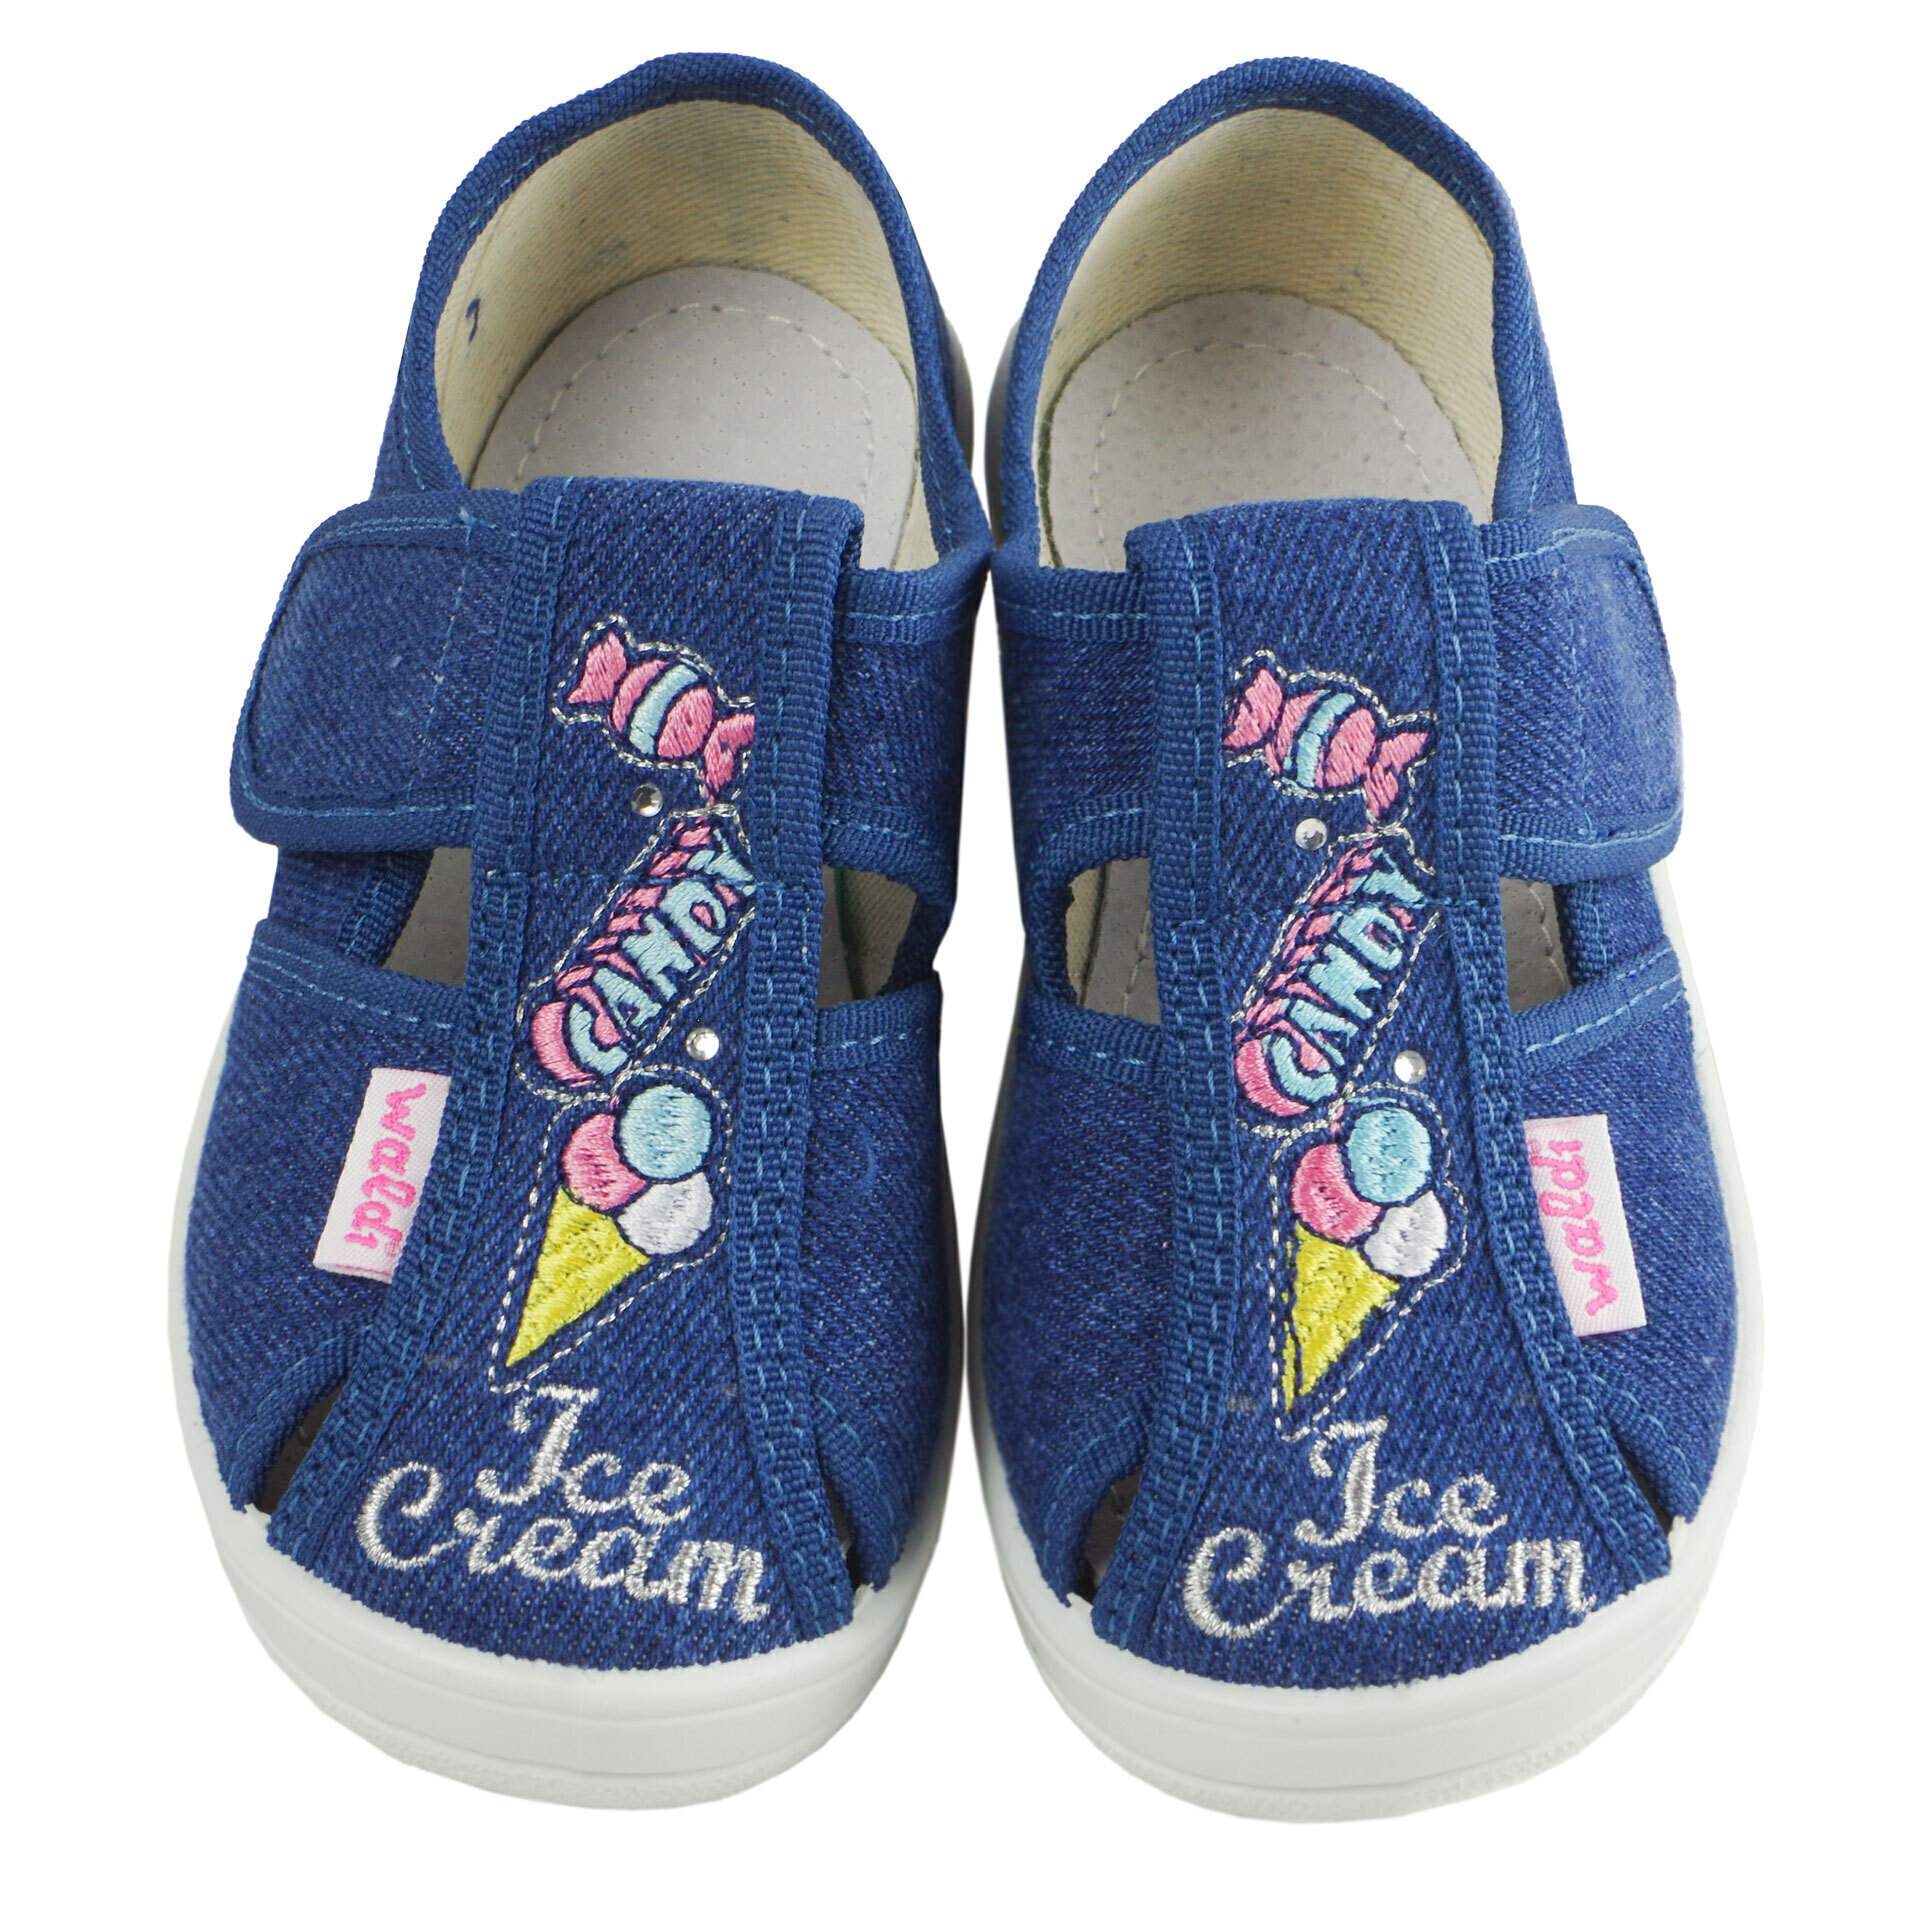 Текстильная обувь для девочек Тапочки Джинс (2040) цвет Синий 24-30 размеры – Sole Kids. Фото 3